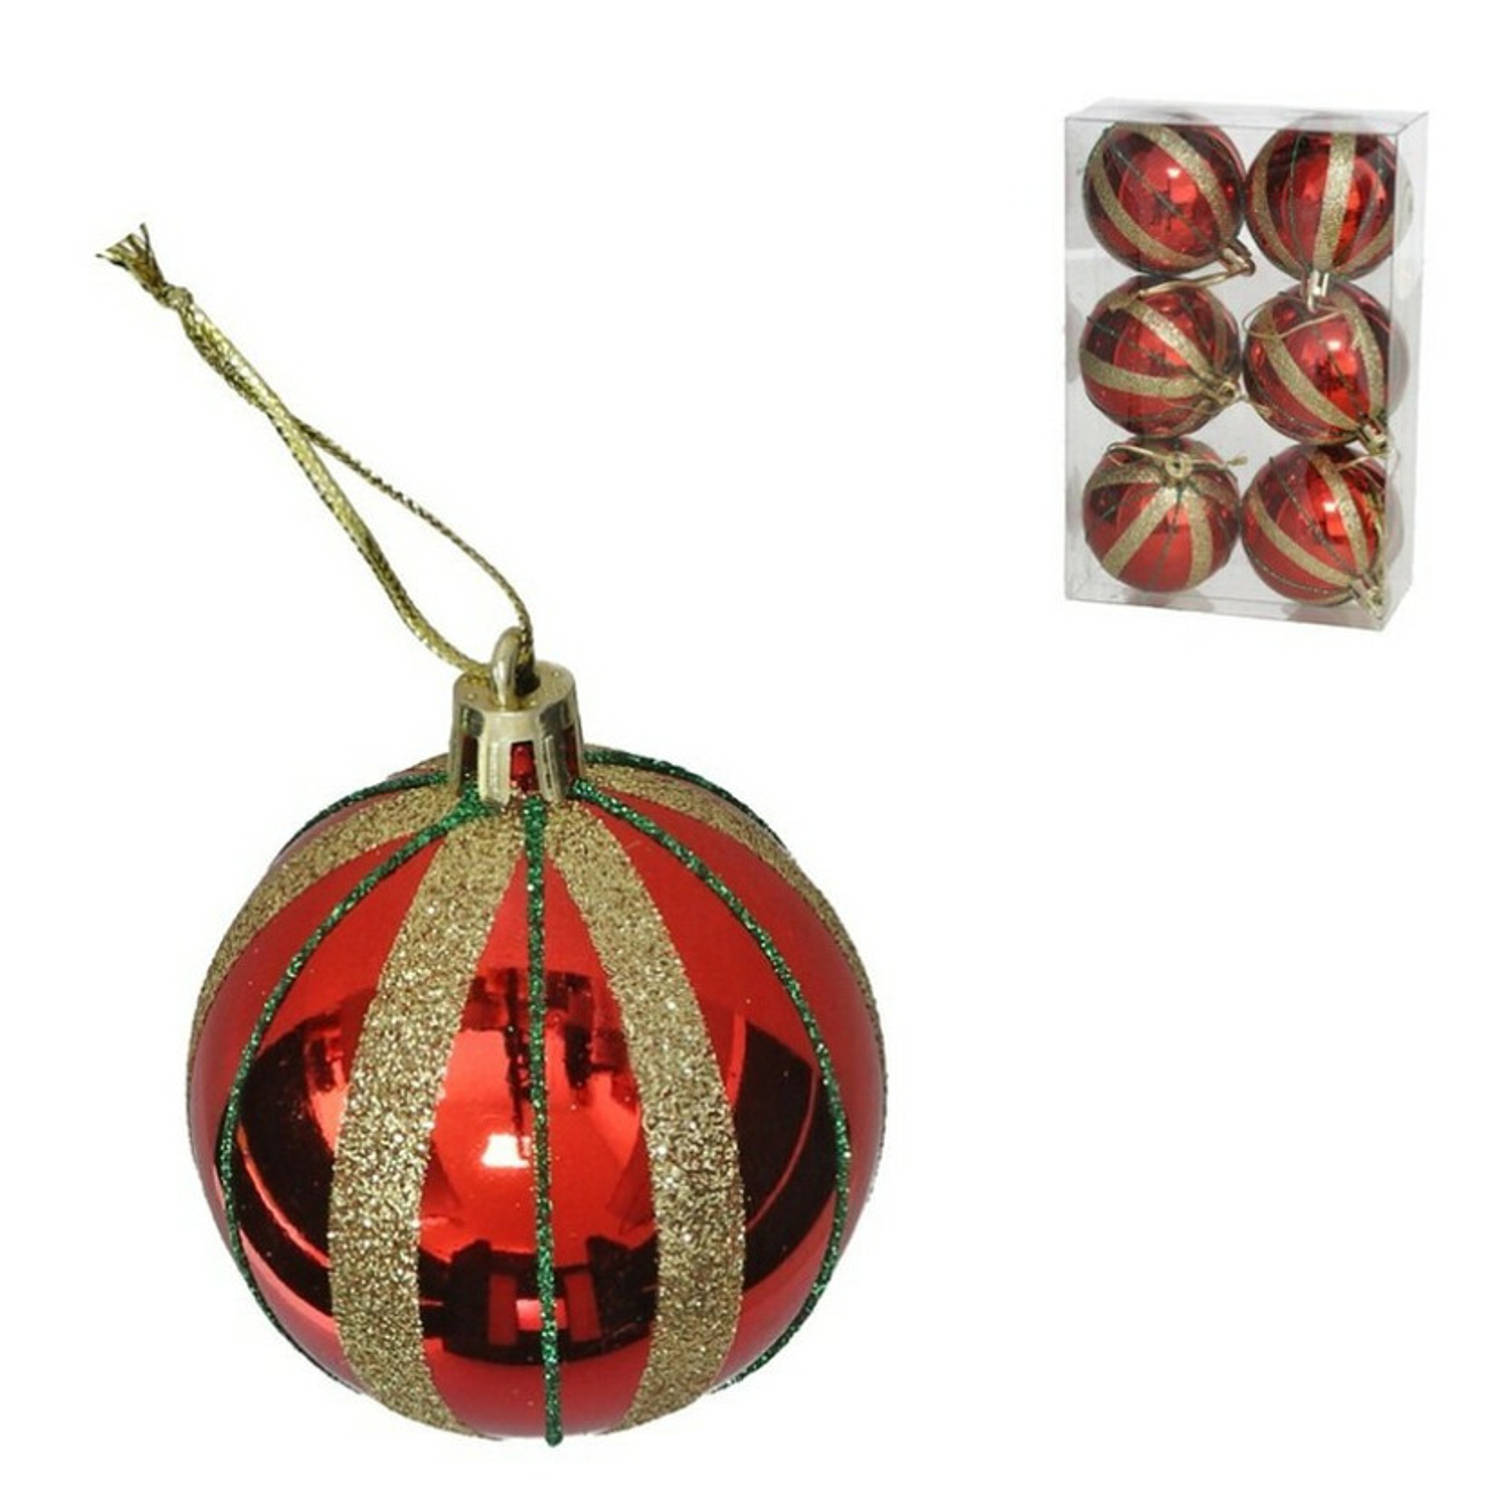 Gerim gedecoreerde kerstballen - 6x - 6 cm - kunststof - rood/goud